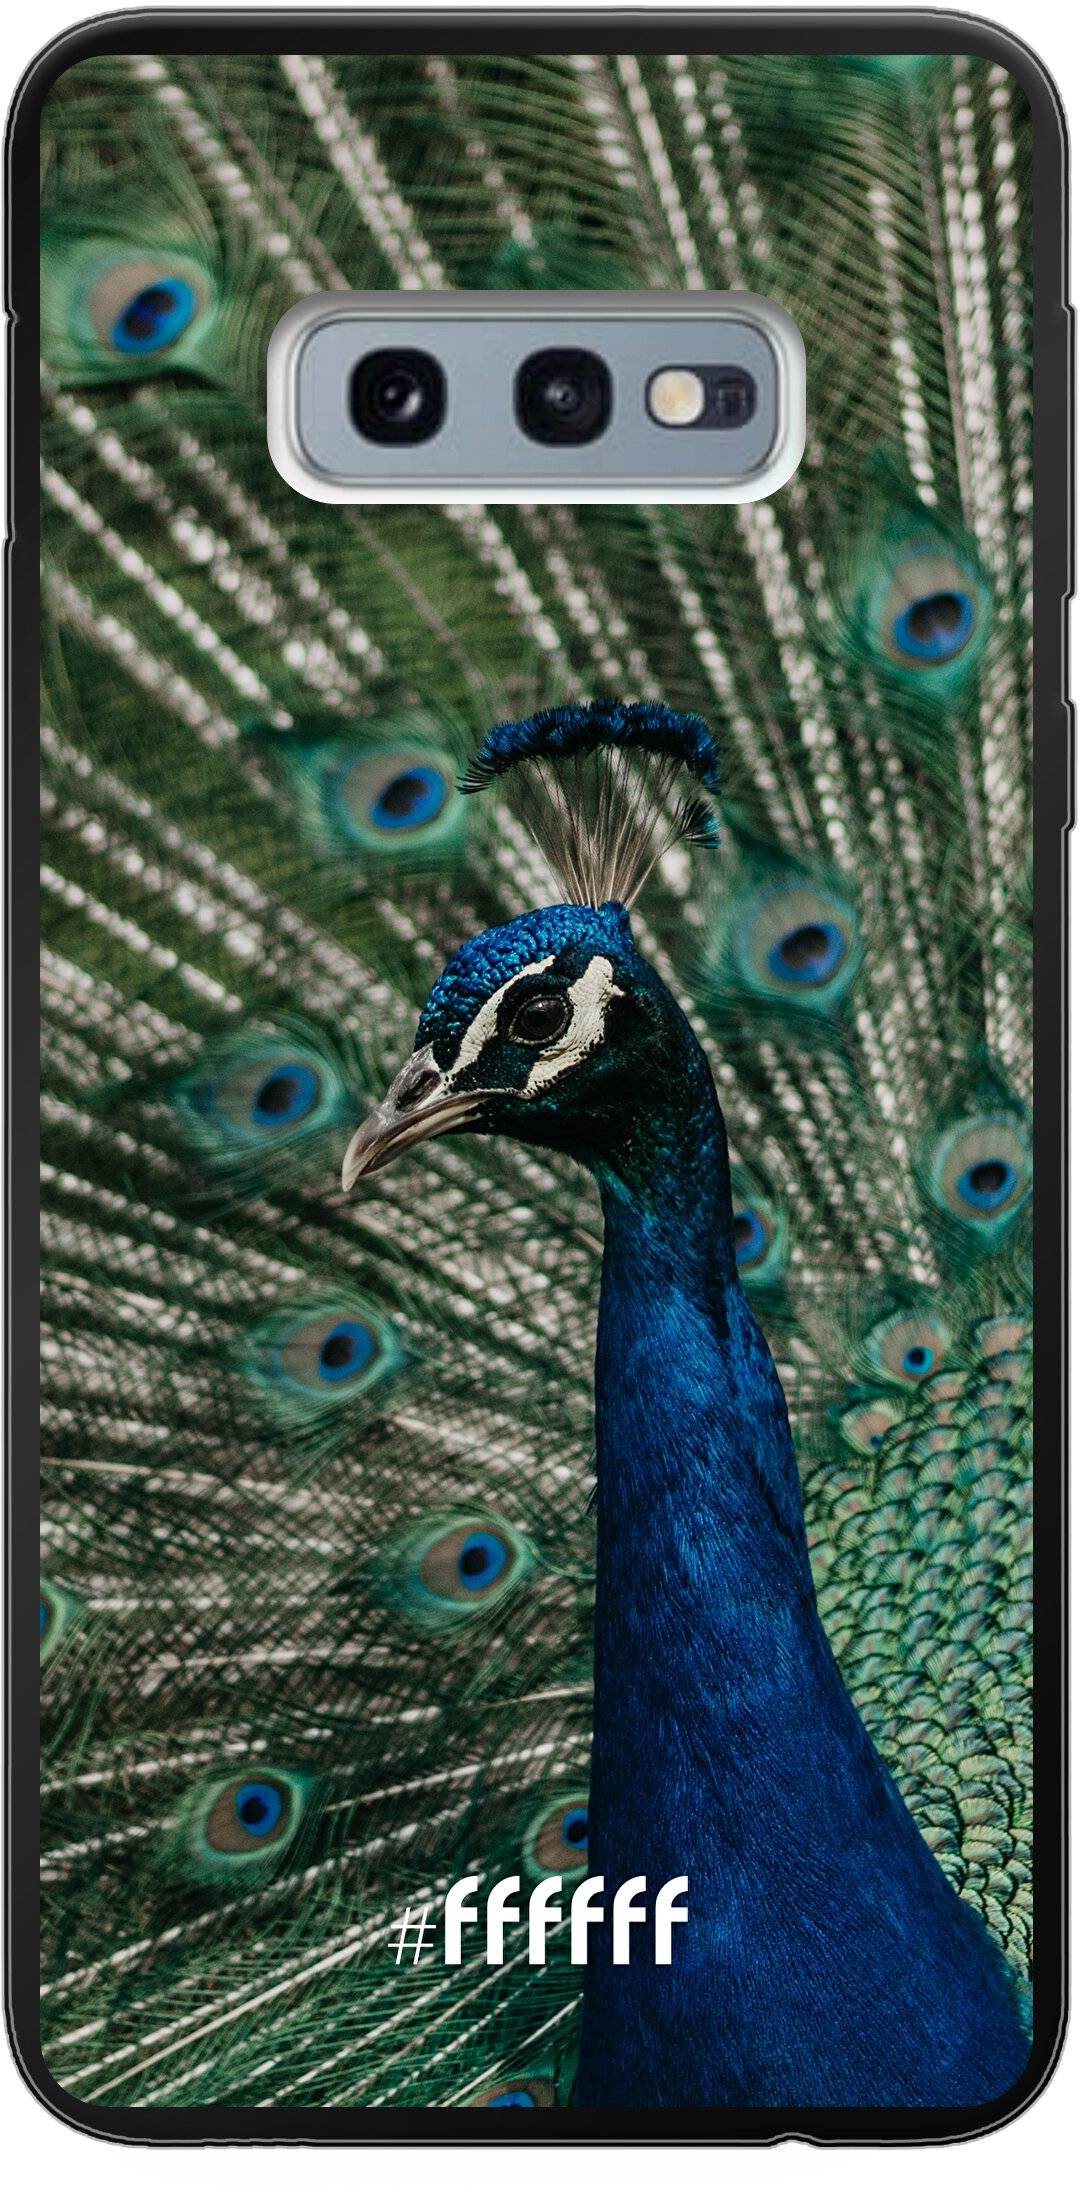 Peacock Galaxy S10e